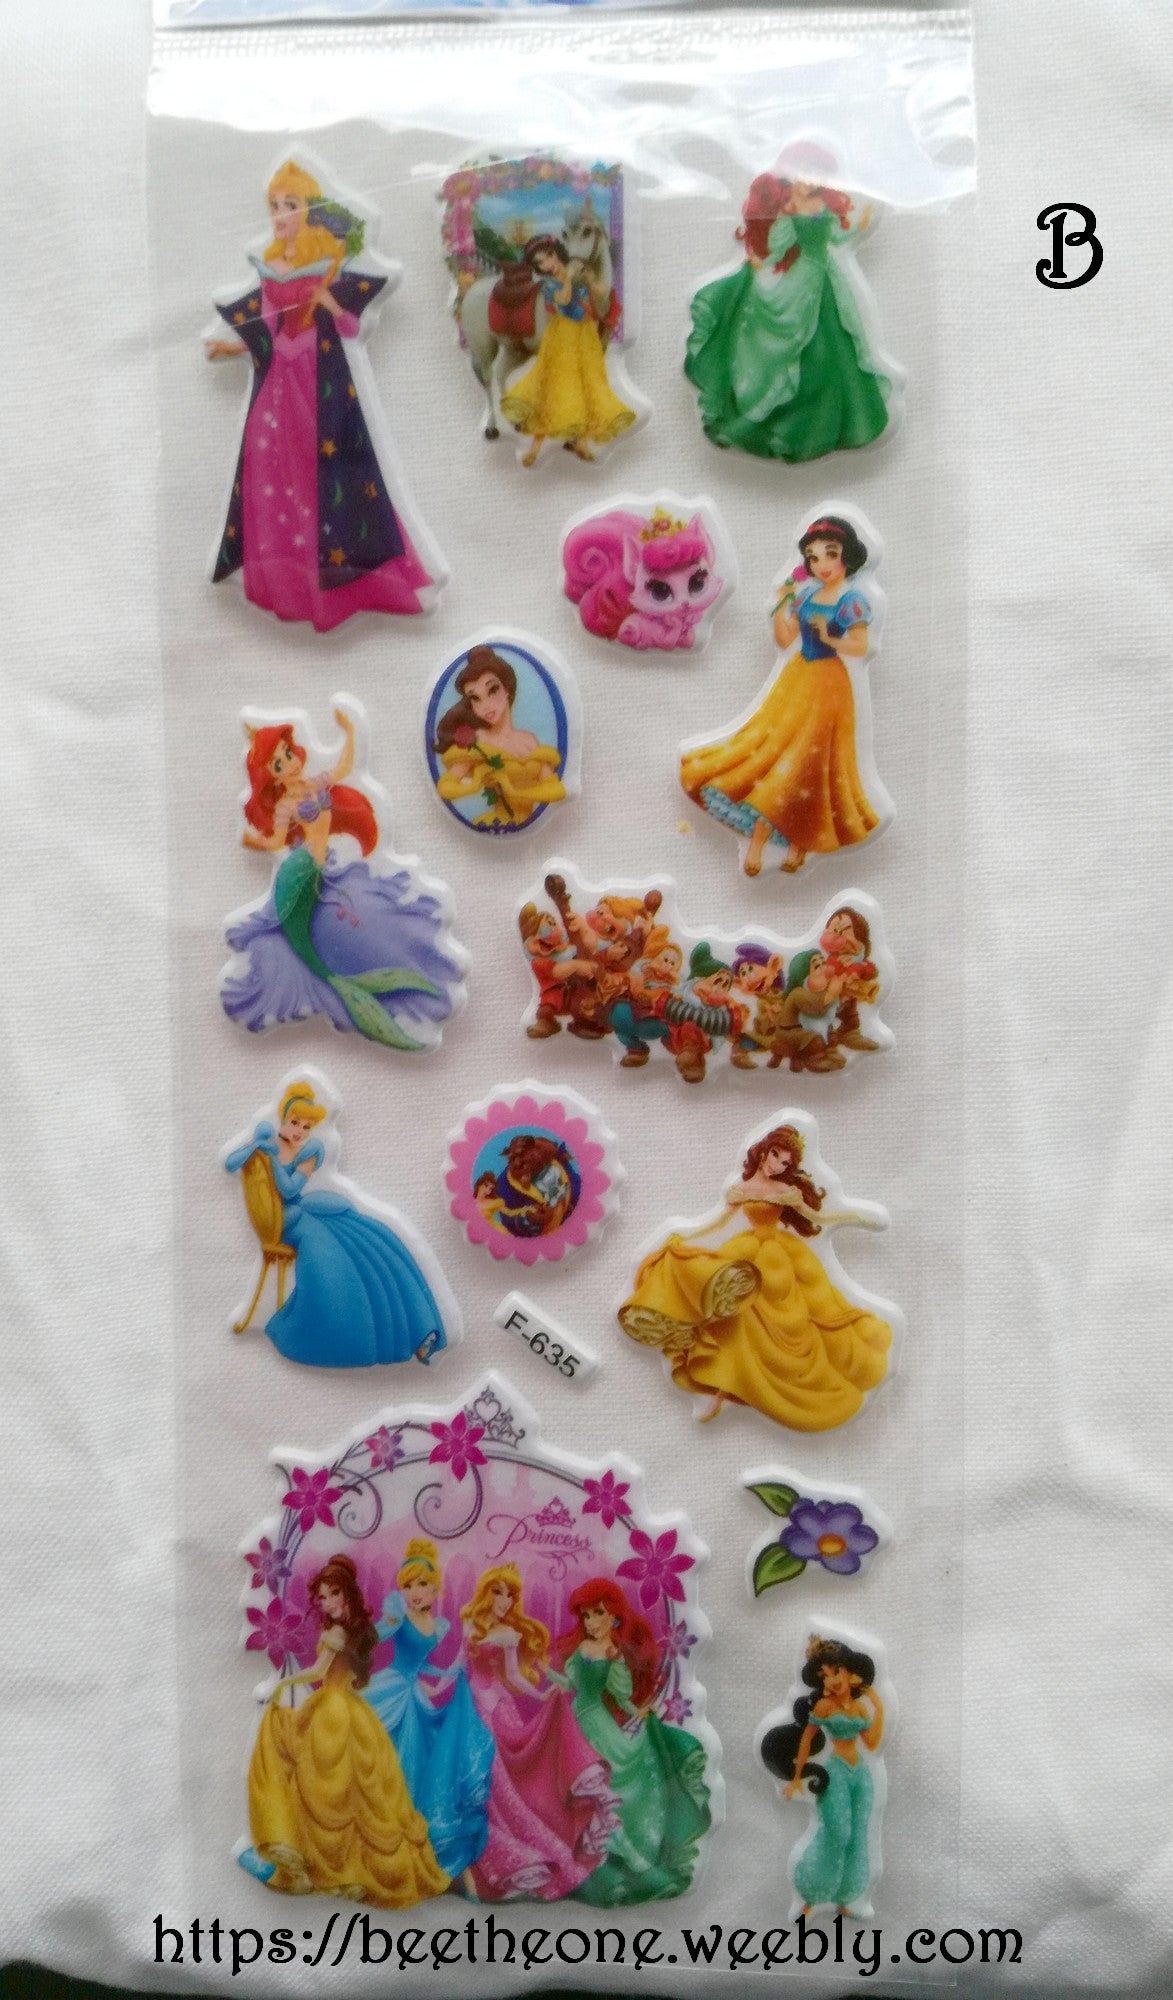 Planche de stickers Princesses "Collection Princesses" - 6 modèles